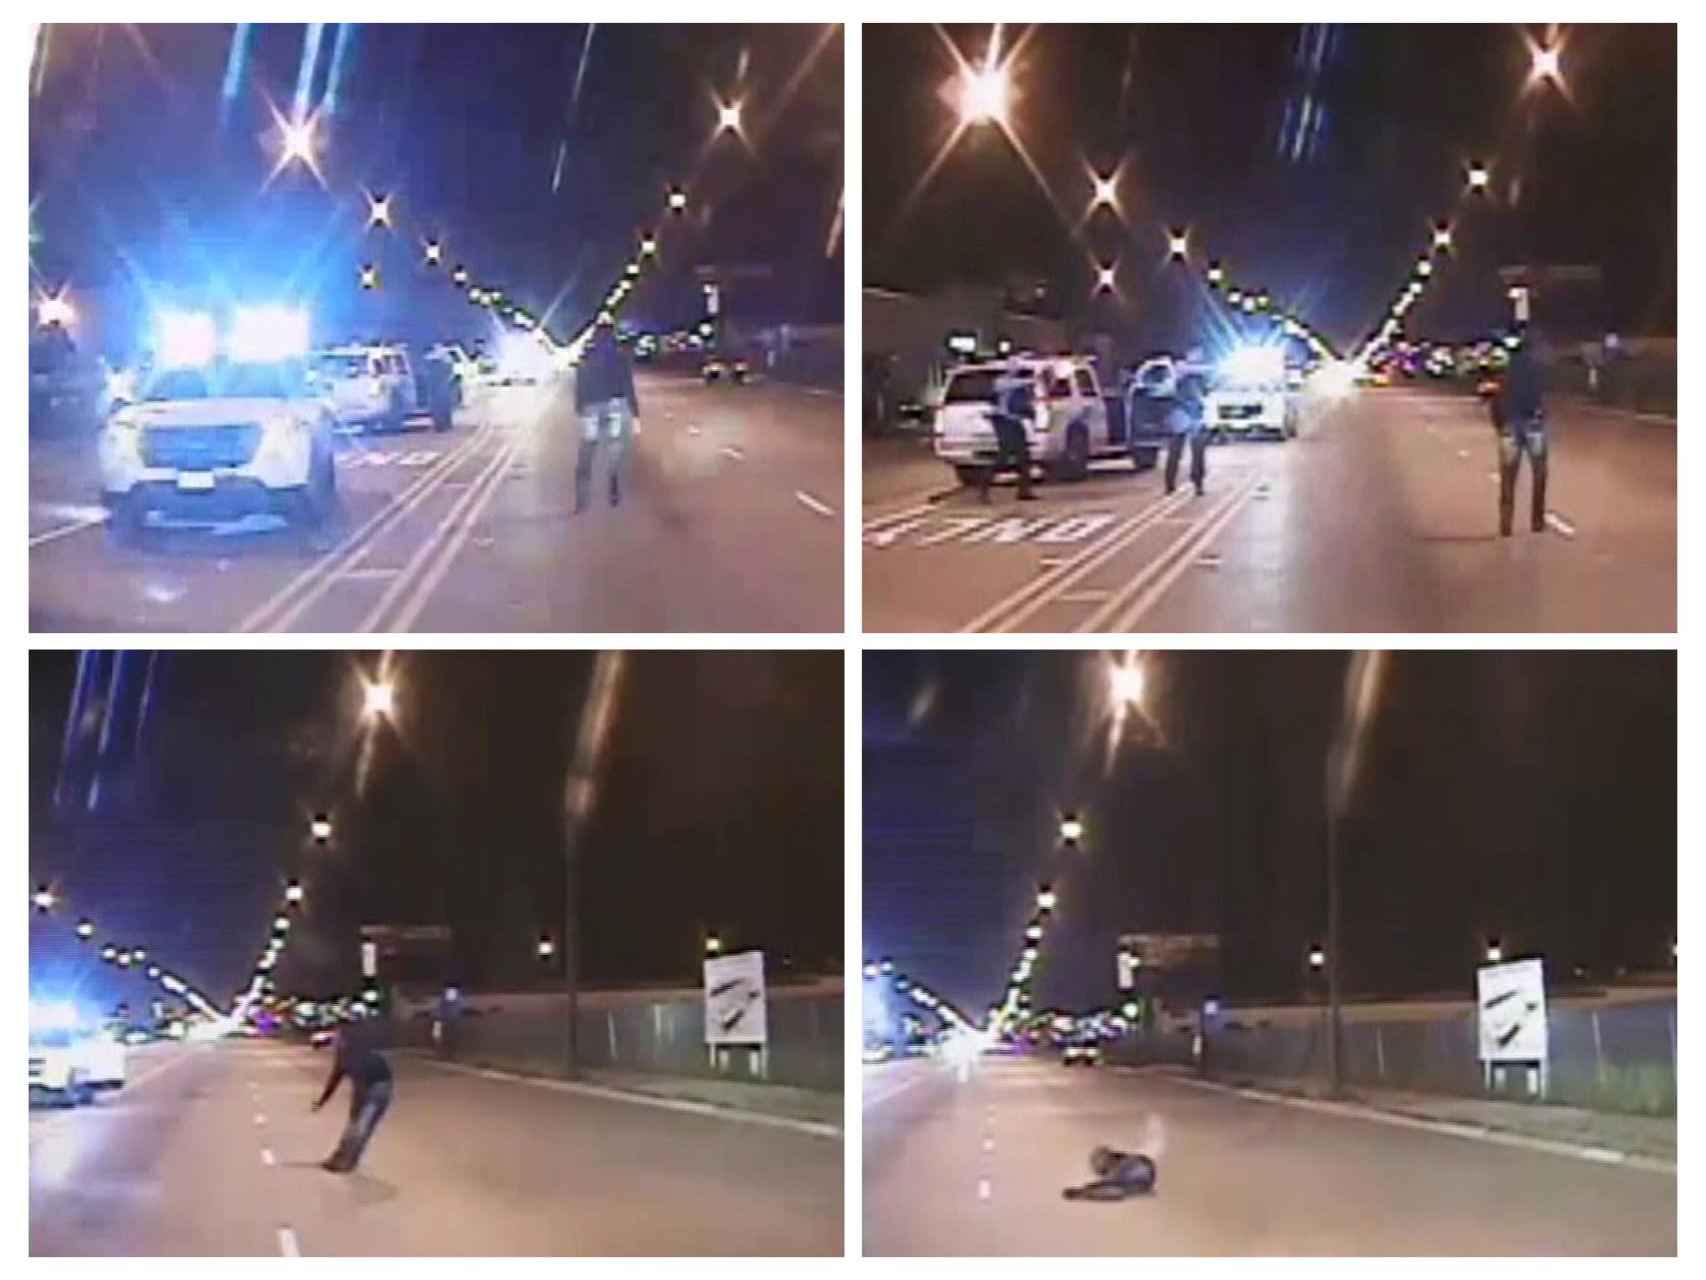 Secuencia del vídeo de la muerte de Laquan McDonald en Chicago.